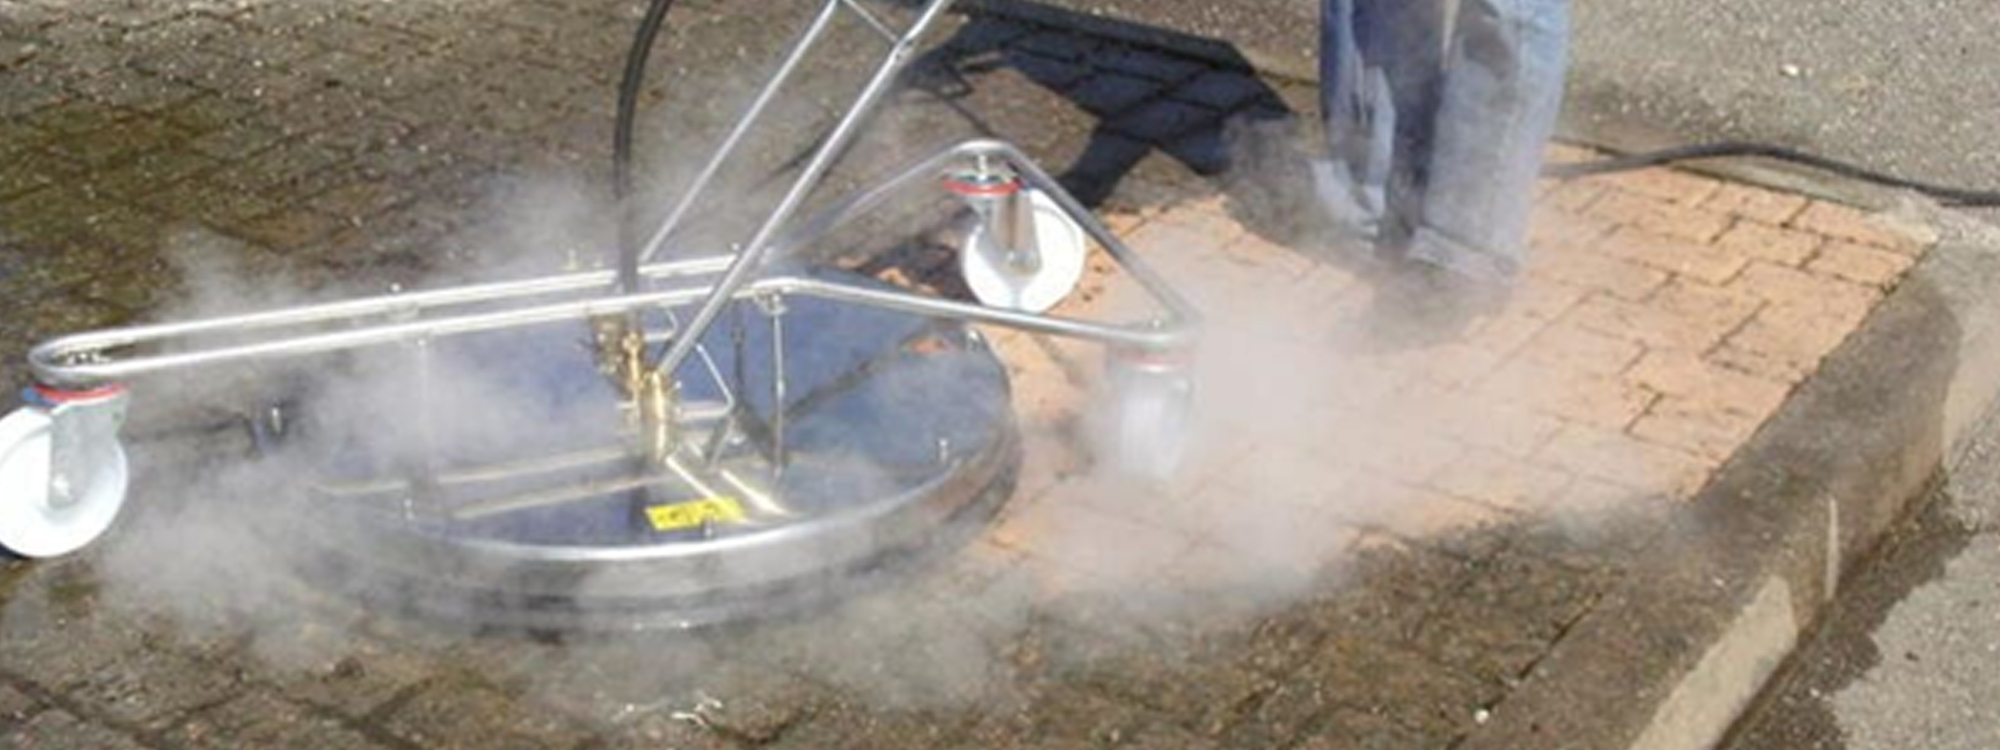 Nettoyage basse pression vapeur -nettoyage écologique